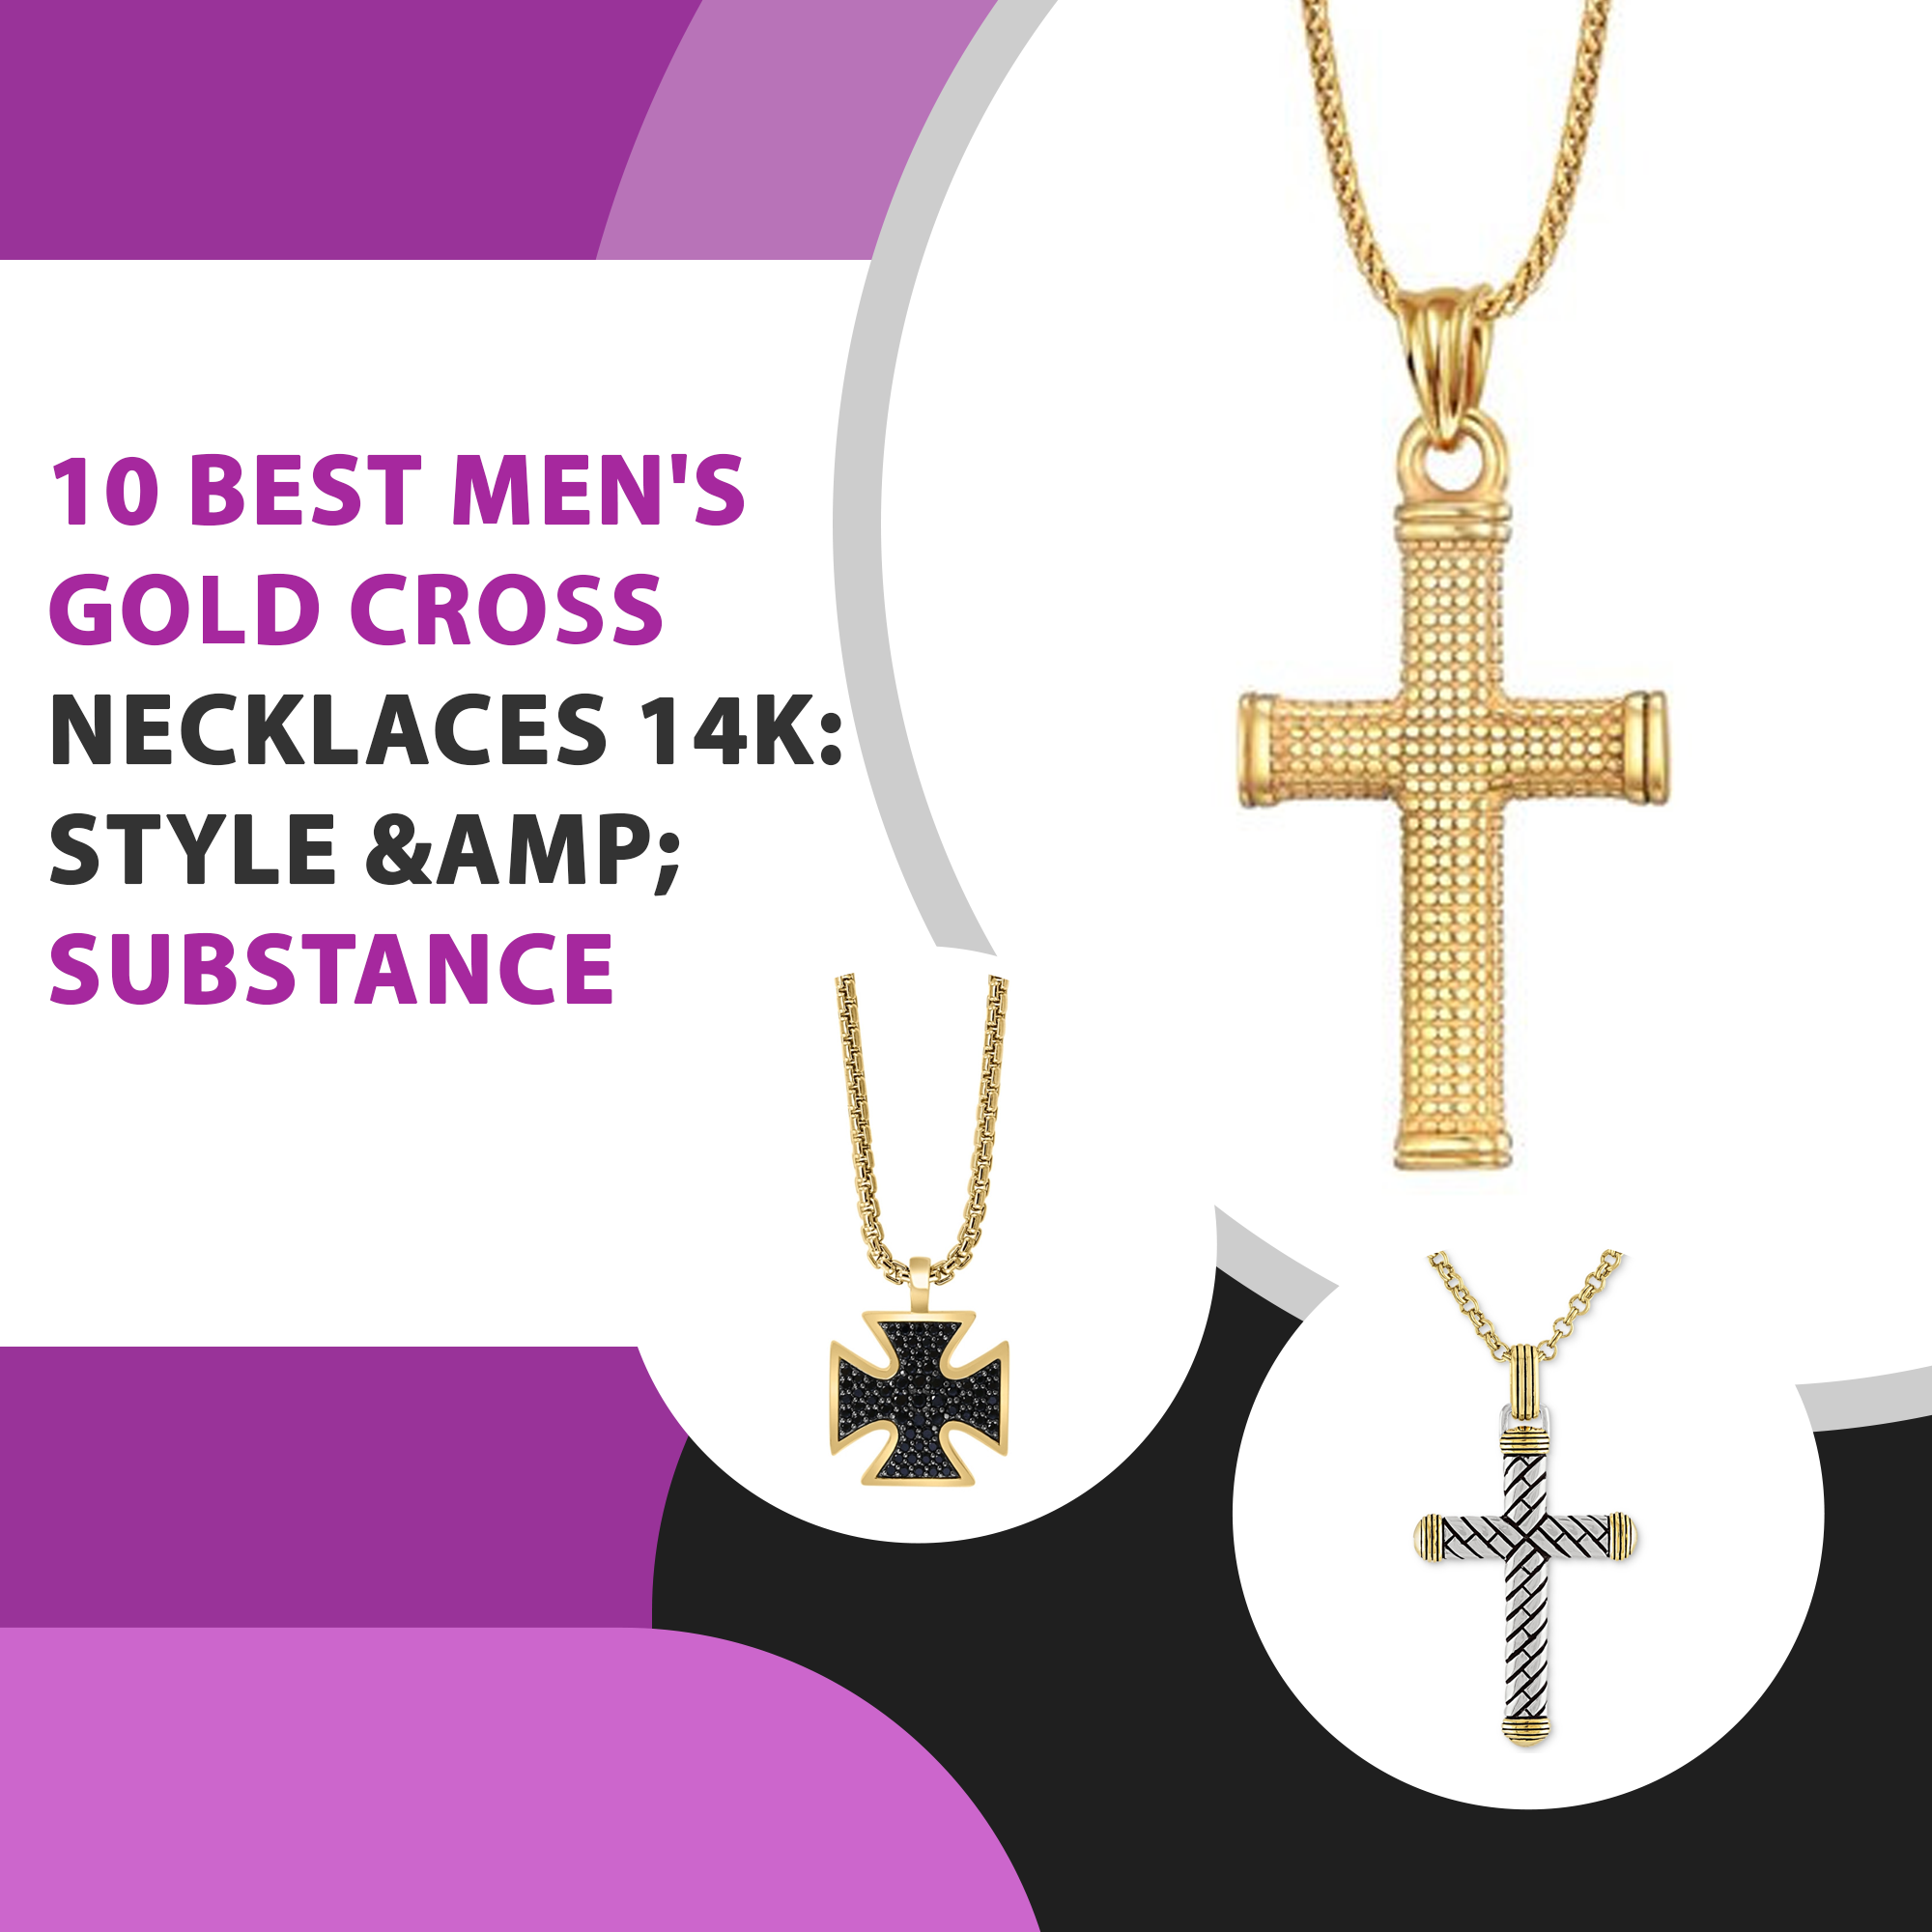 10 Best Men’s Gold Cross Necklaces 14k: Style & Substance